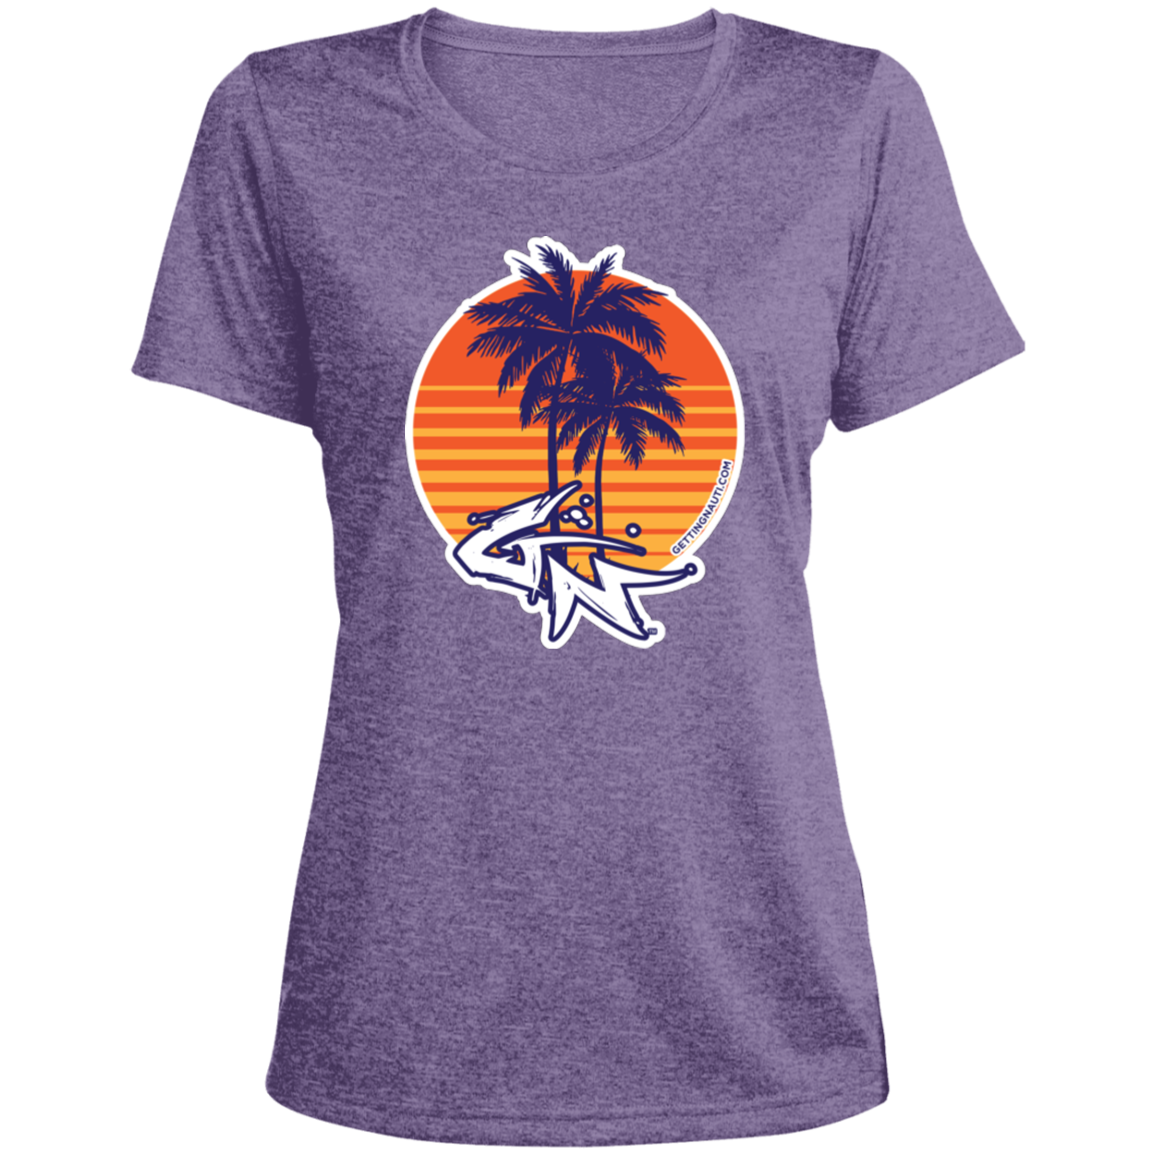 Retro Palm Trees - Ladies' Performance T-Shirt